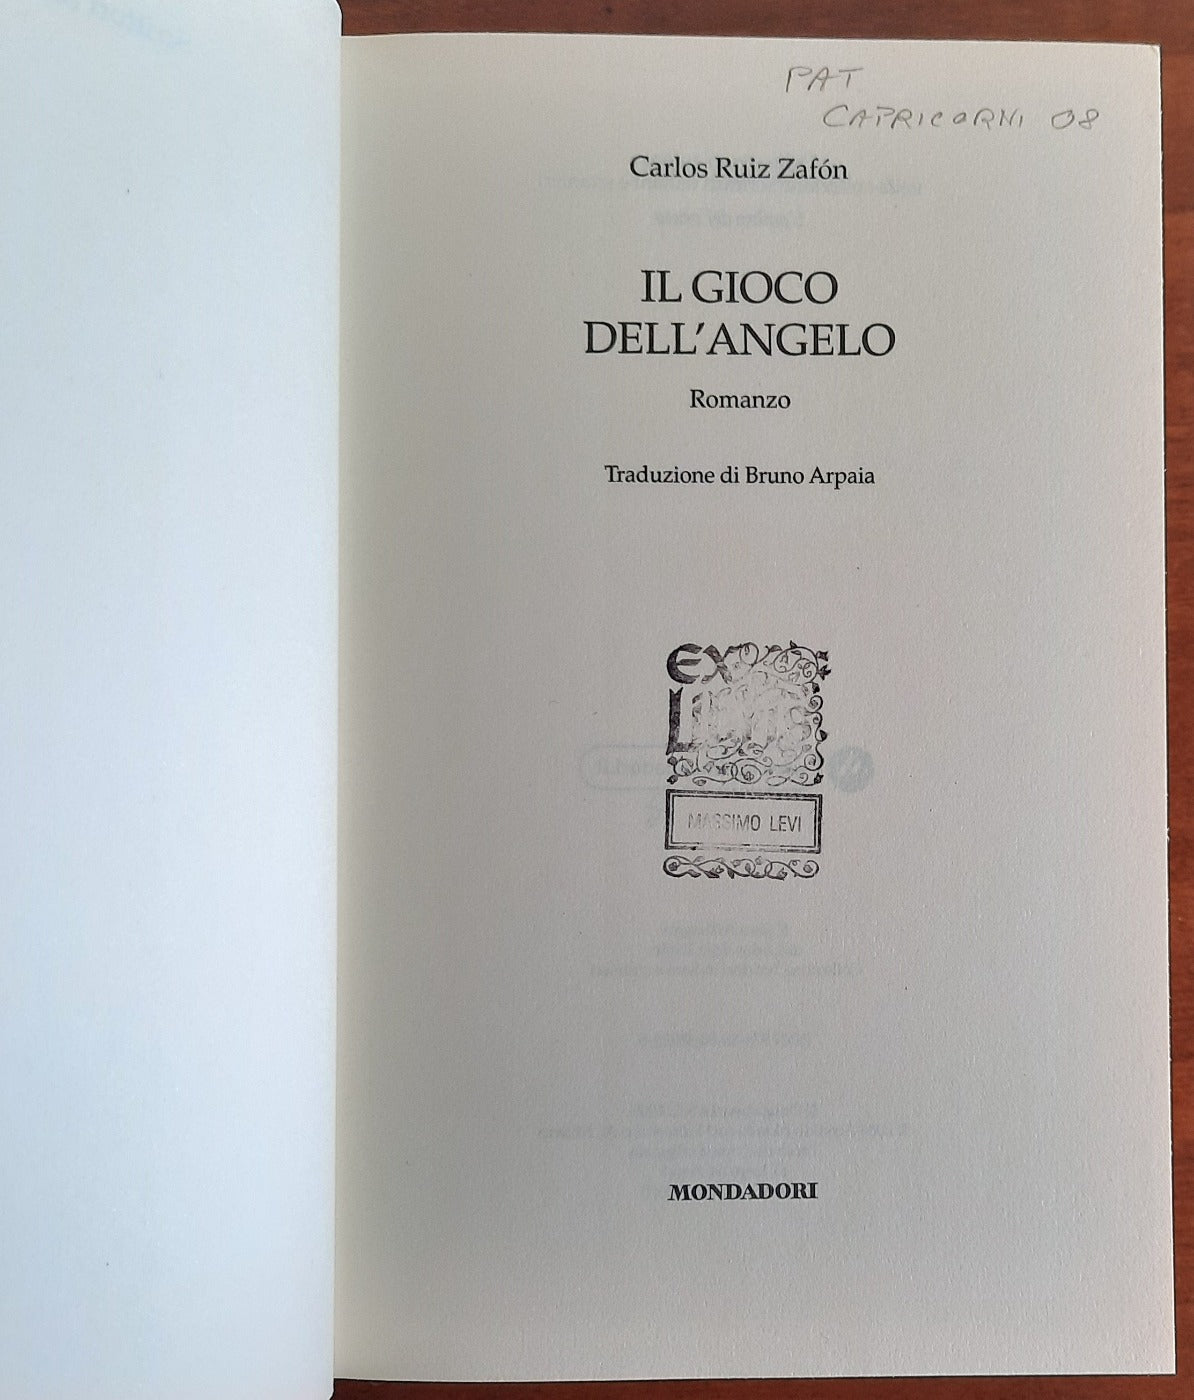 Il gioco dell'angelo, Carlos Ruiz Zafón - Libri e Riviste In